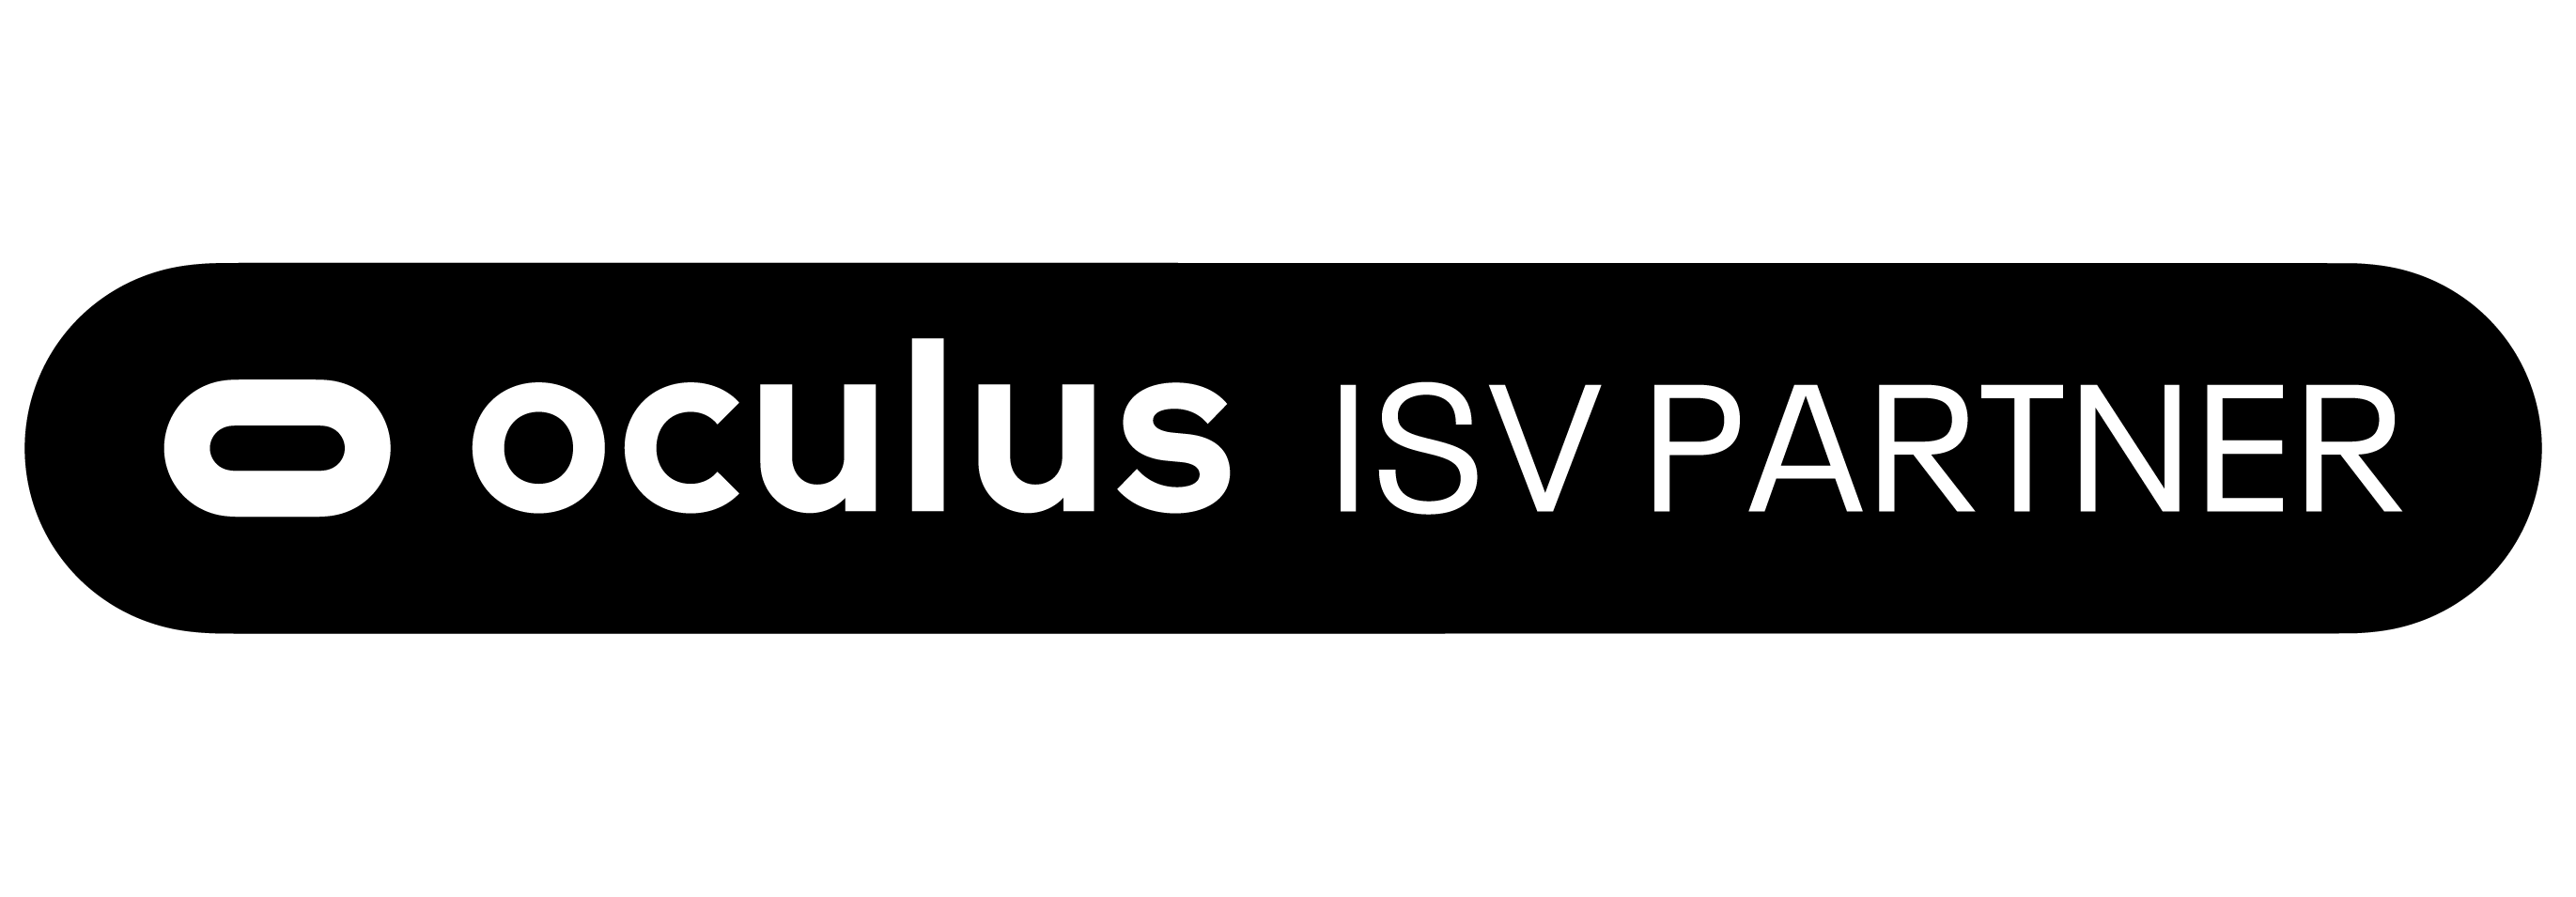 Oculus for business ISV partner